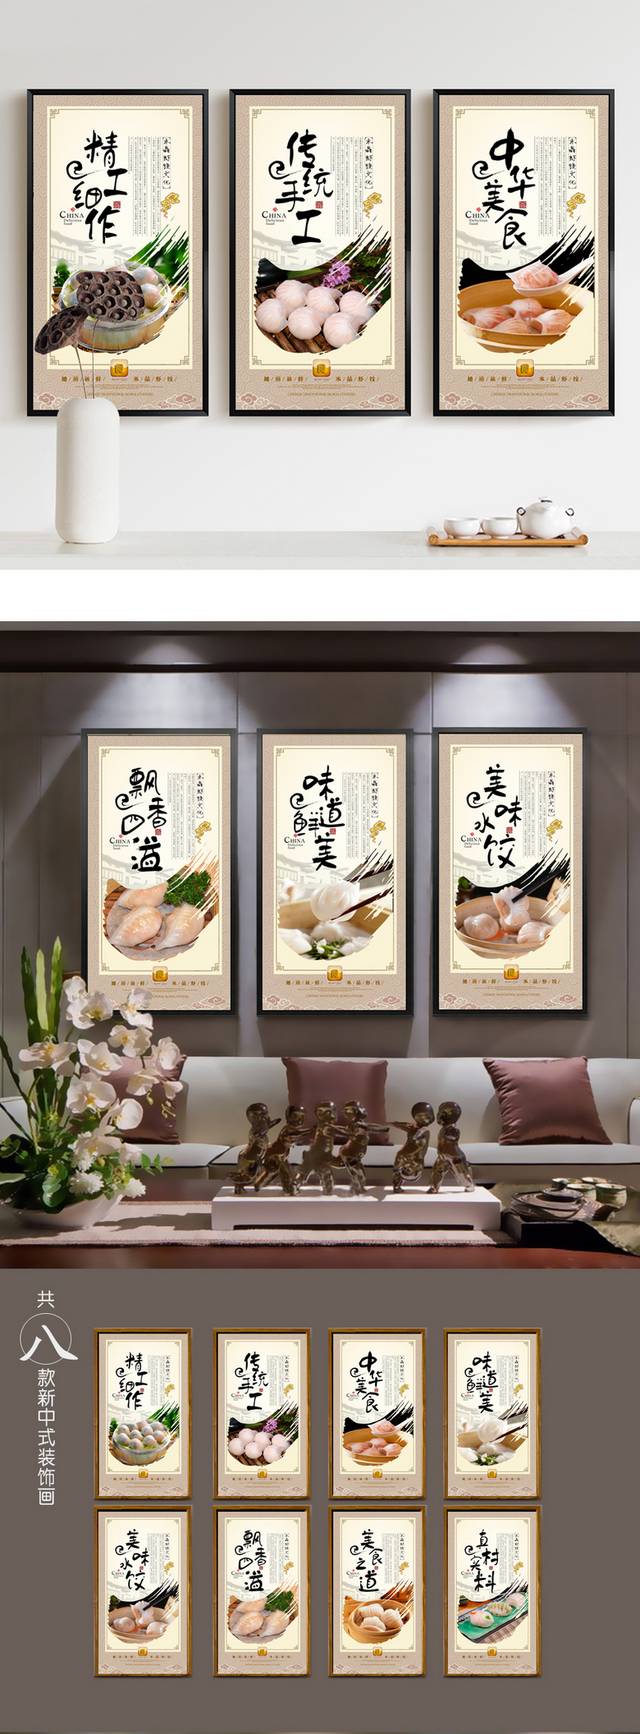 舌尖上的美食水晶虾饺宣传展板